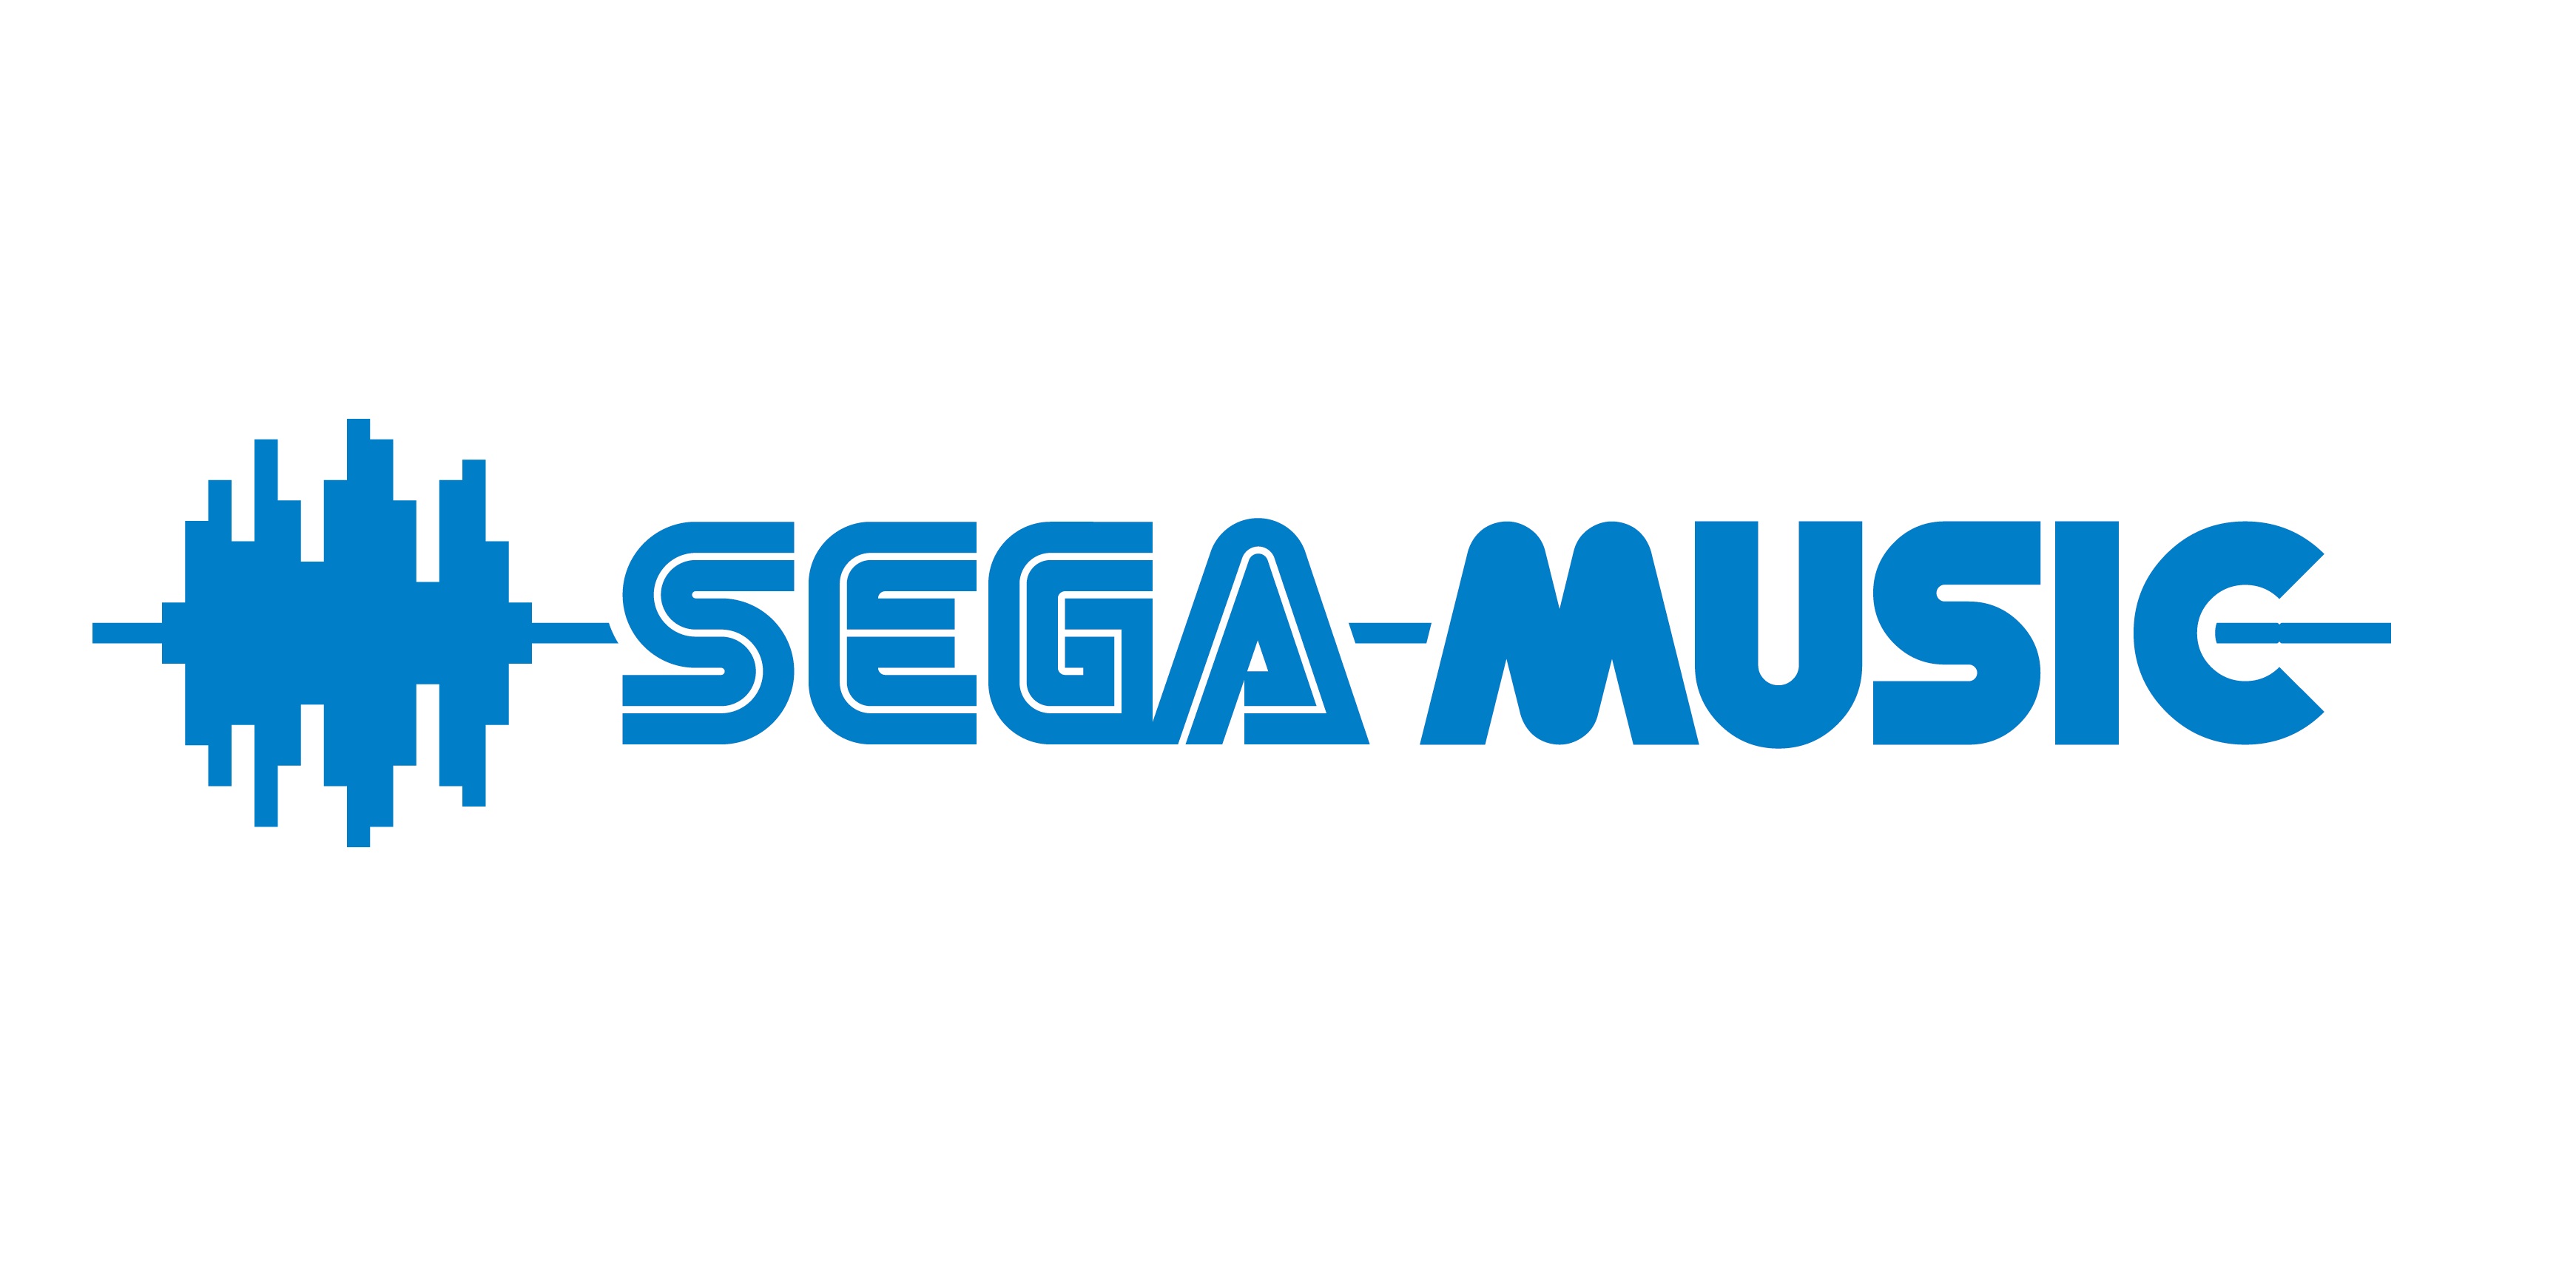 世嘉推出音乐品牌SEGA music 《新樱花大战 歌谣全集》明日发售